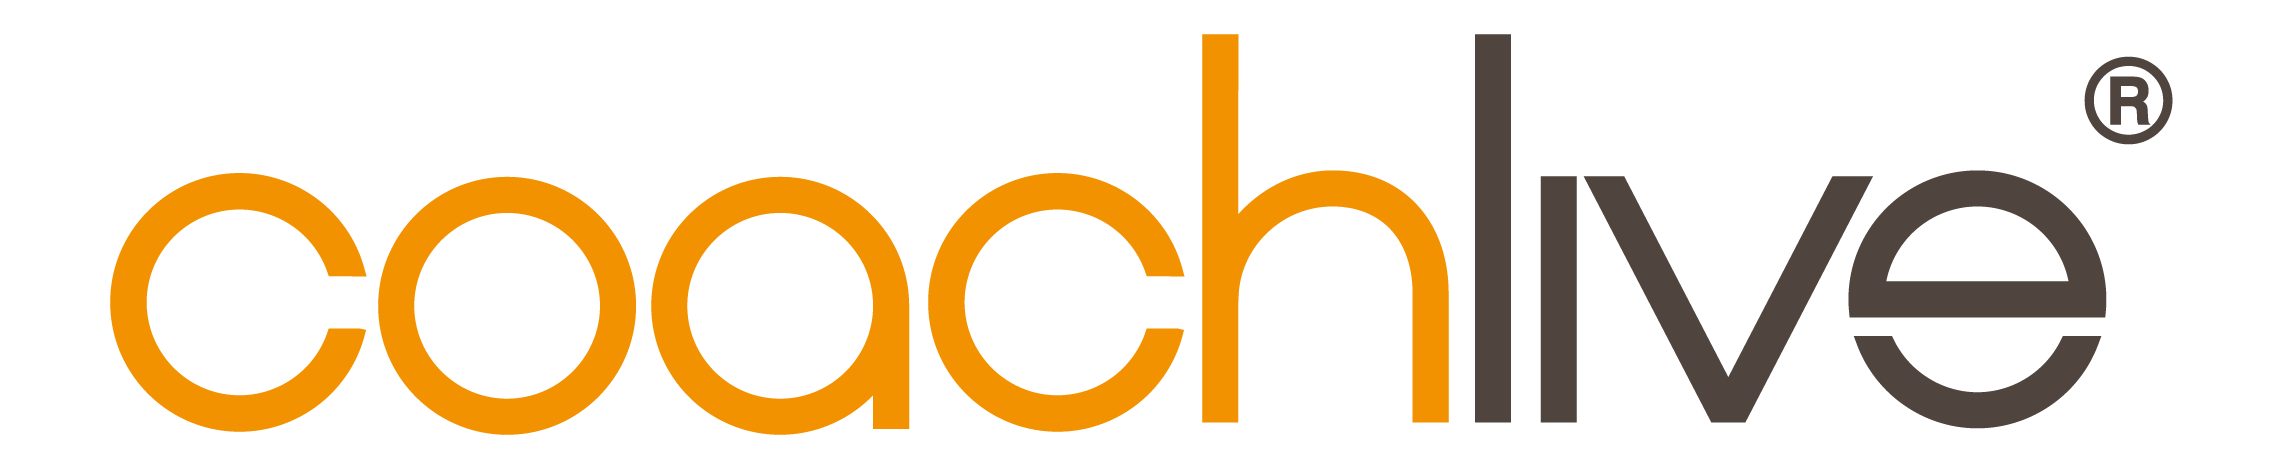 coachlive-logo-on-white-01